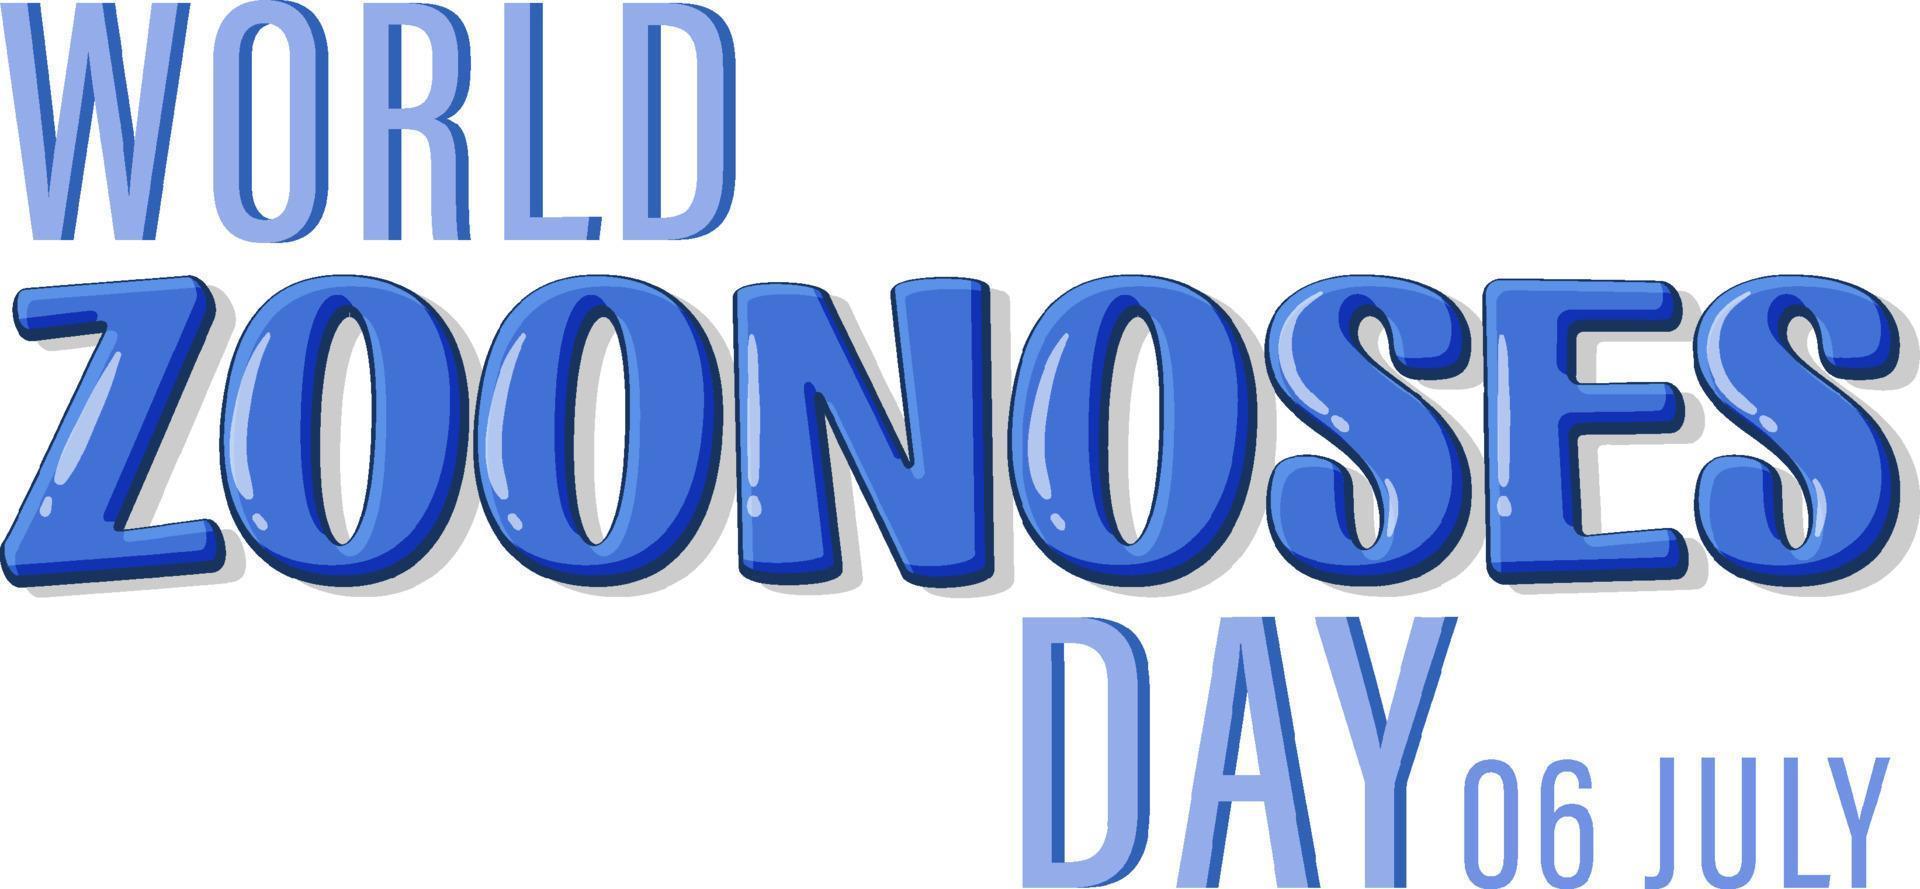 dia mundial das zoonoses em 6 de julho design de cartaz vetor